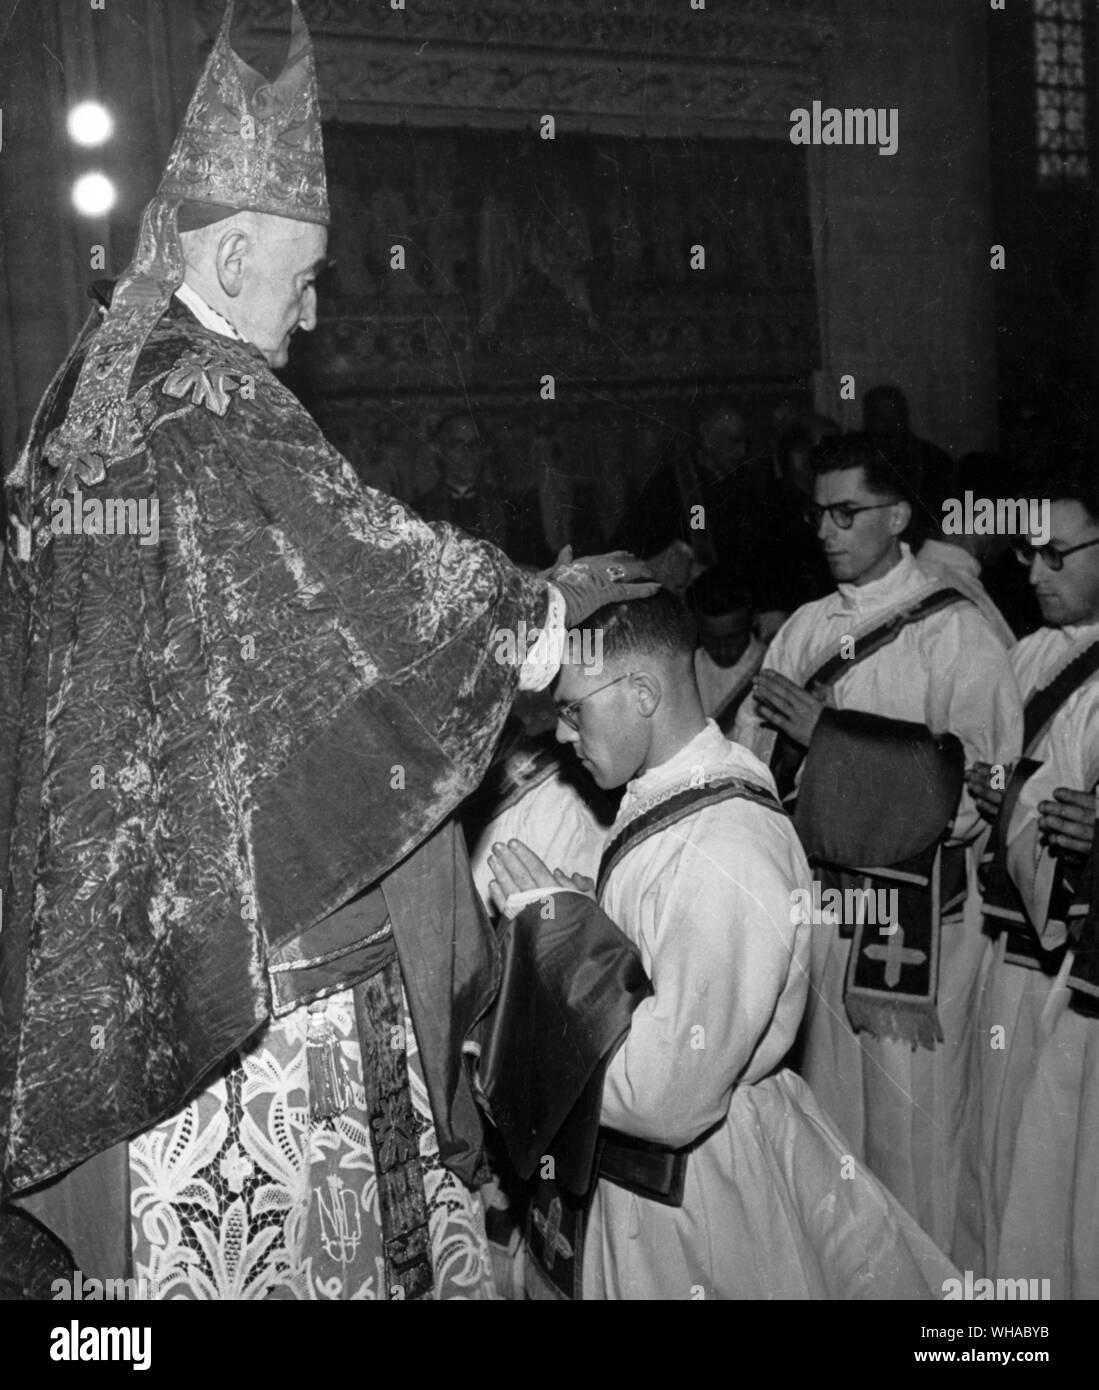 La ordenación. El obispo impone las manos sobre los candidatos, seguido por todos los demás sacerdotes presentes, entonces les presenta annoints casullas y sus manos. Foto de stock